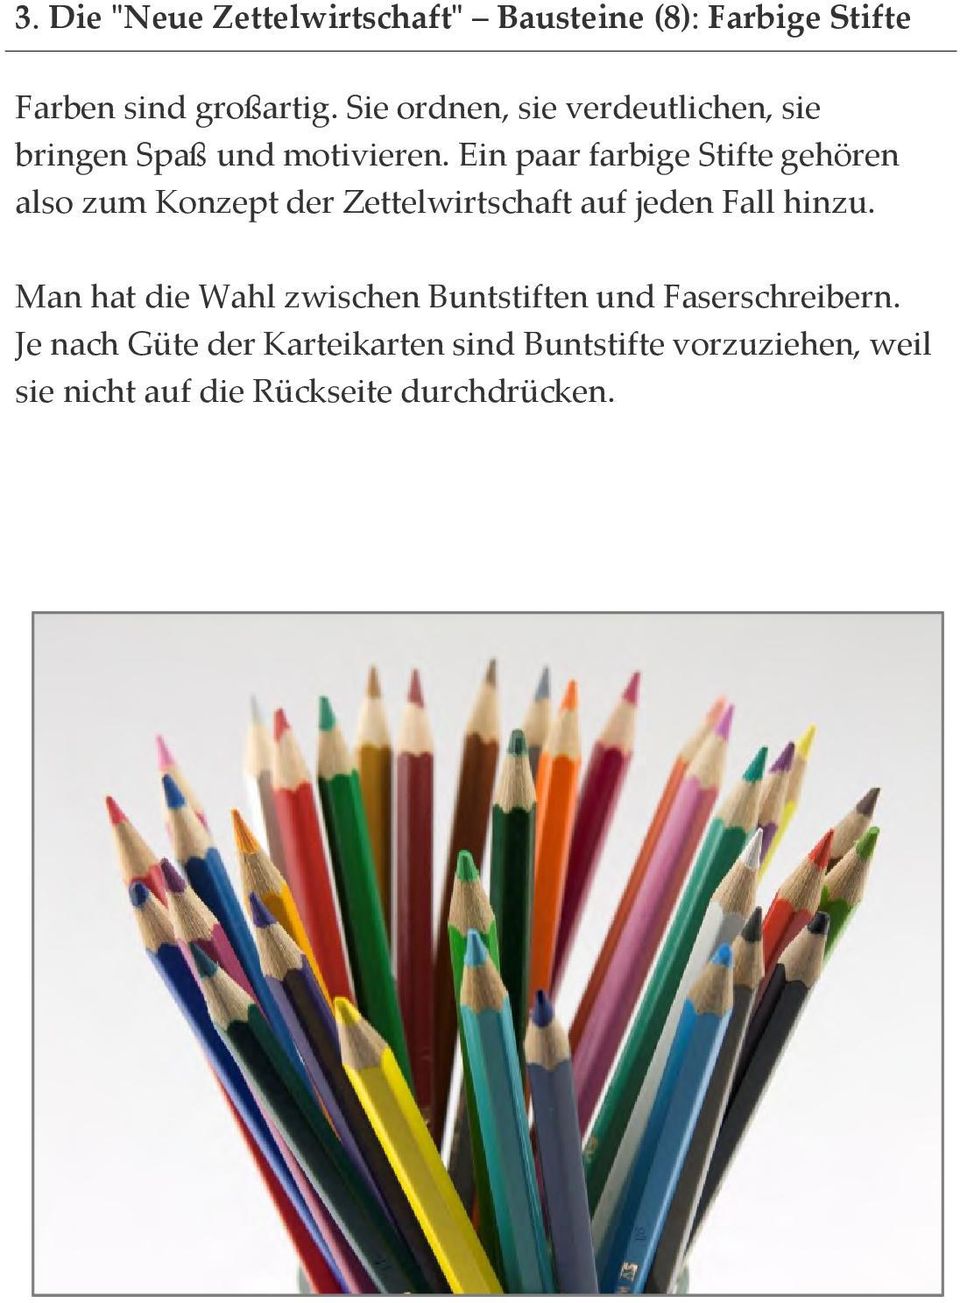 Ein paar farbige Stifte gehören also zum Konzept der Zettelwirtschaft auf jeden Fall hinzu.